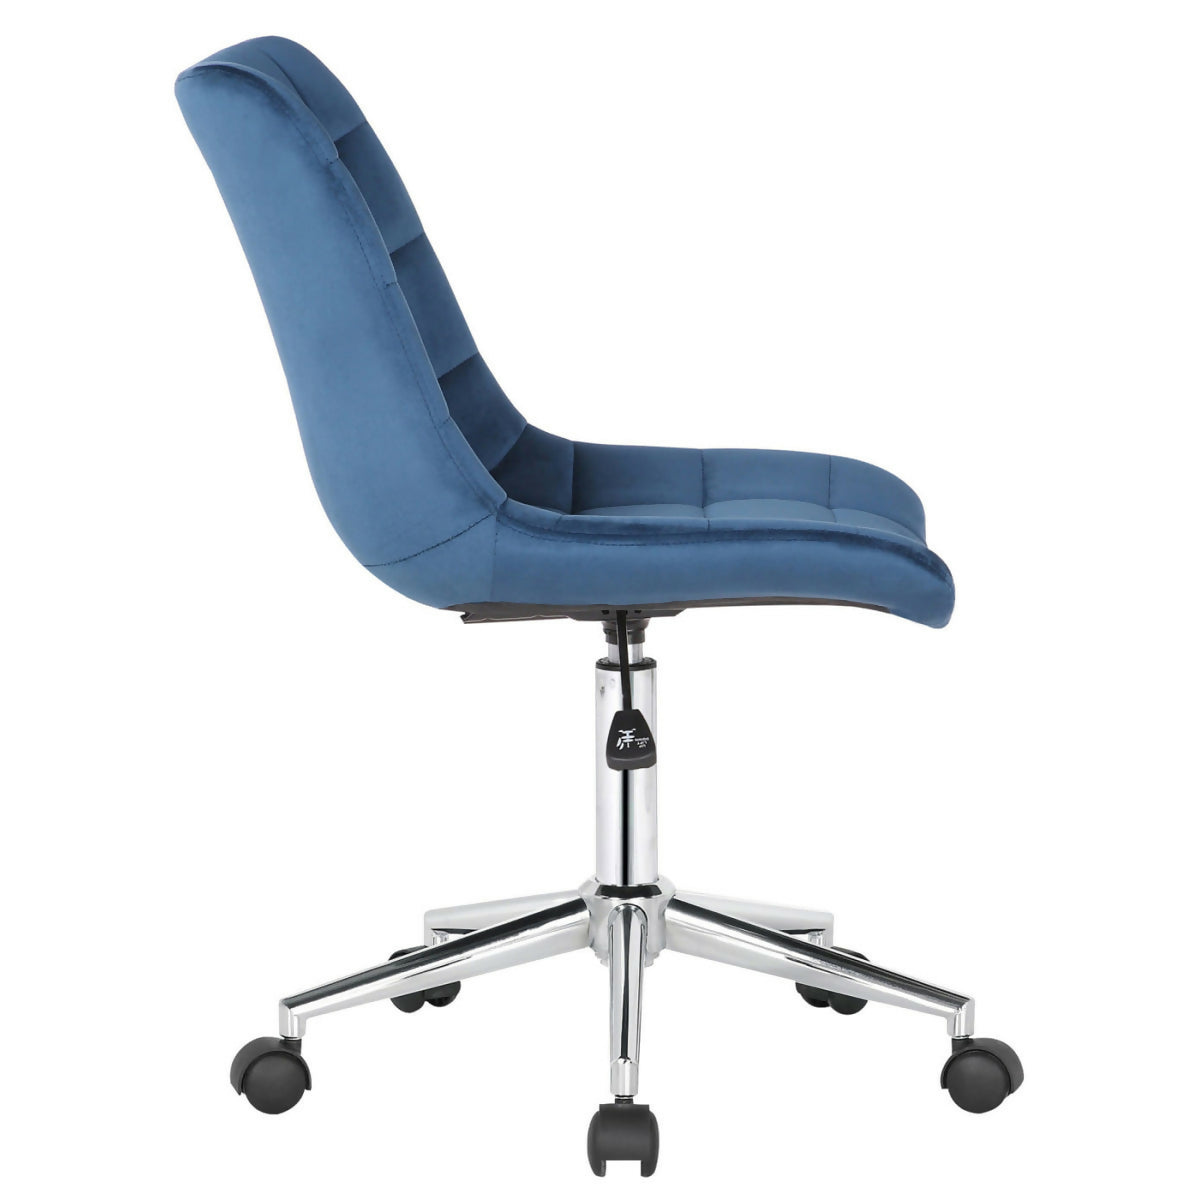 Medford office chair - Blue velvet